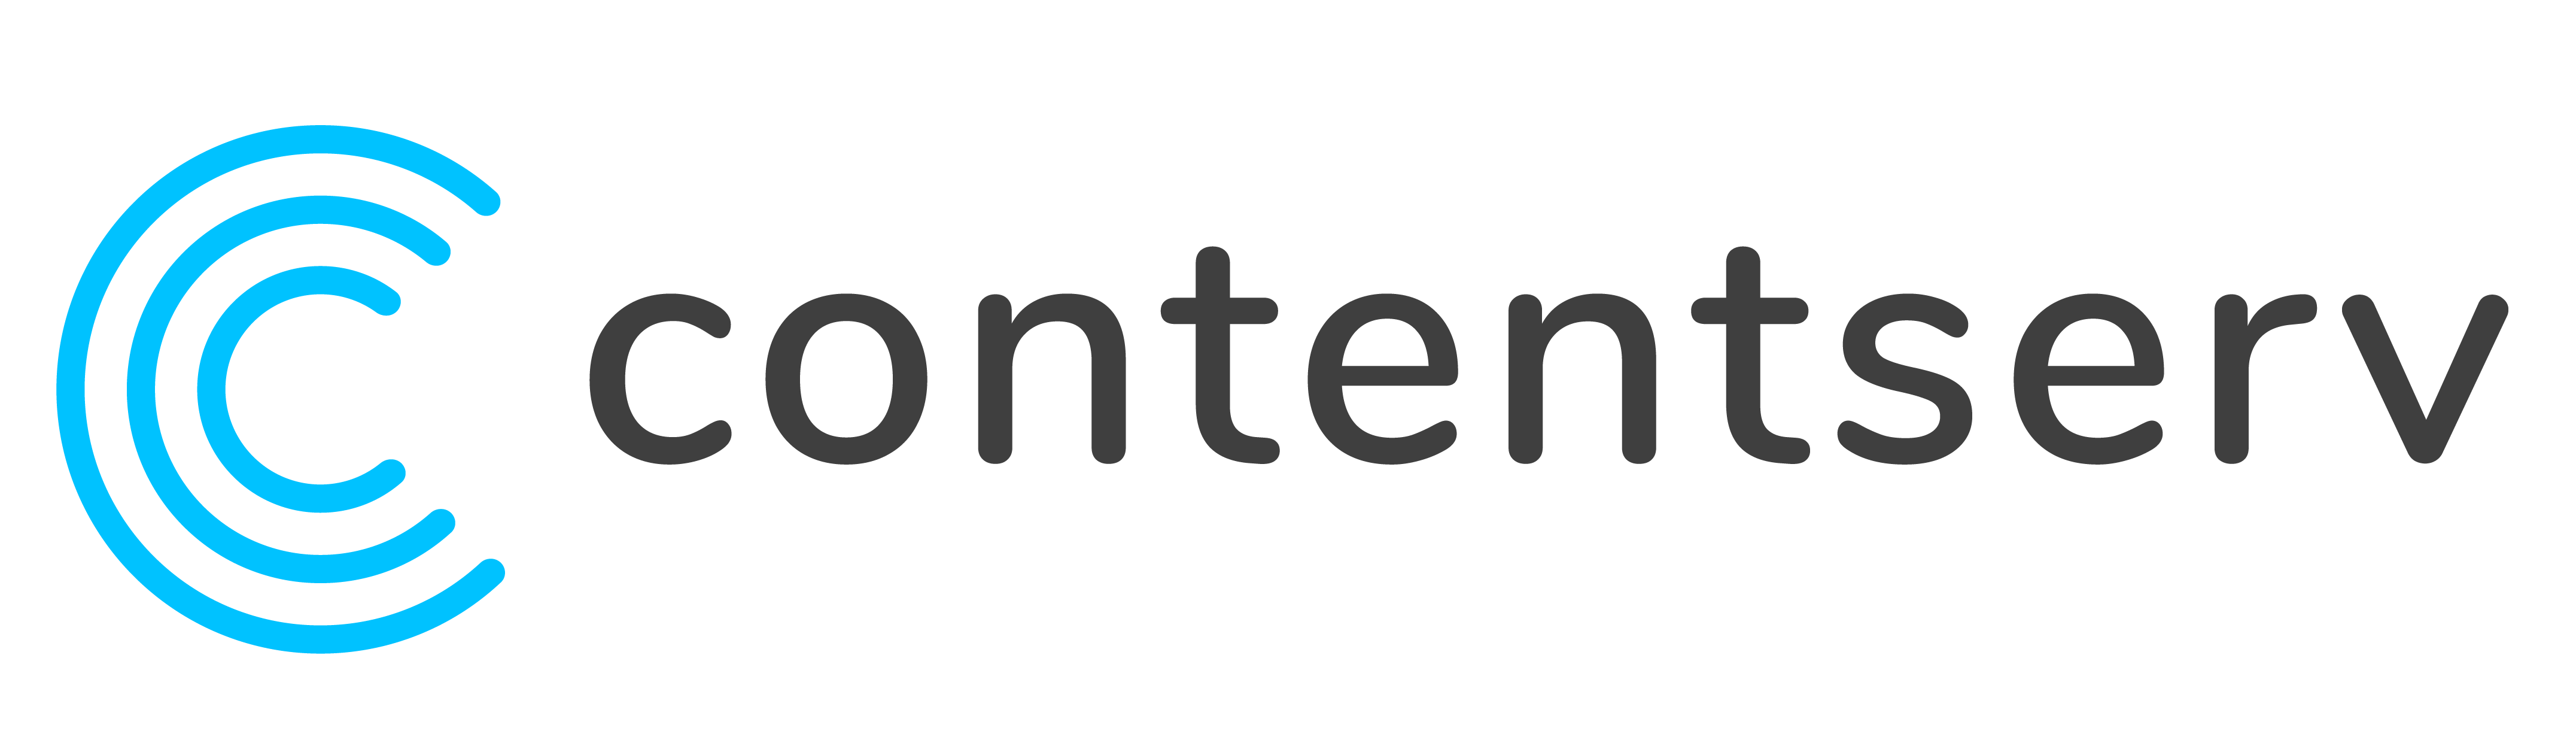 Contentserv full logo 2021-large_blue-black-on-light-bg